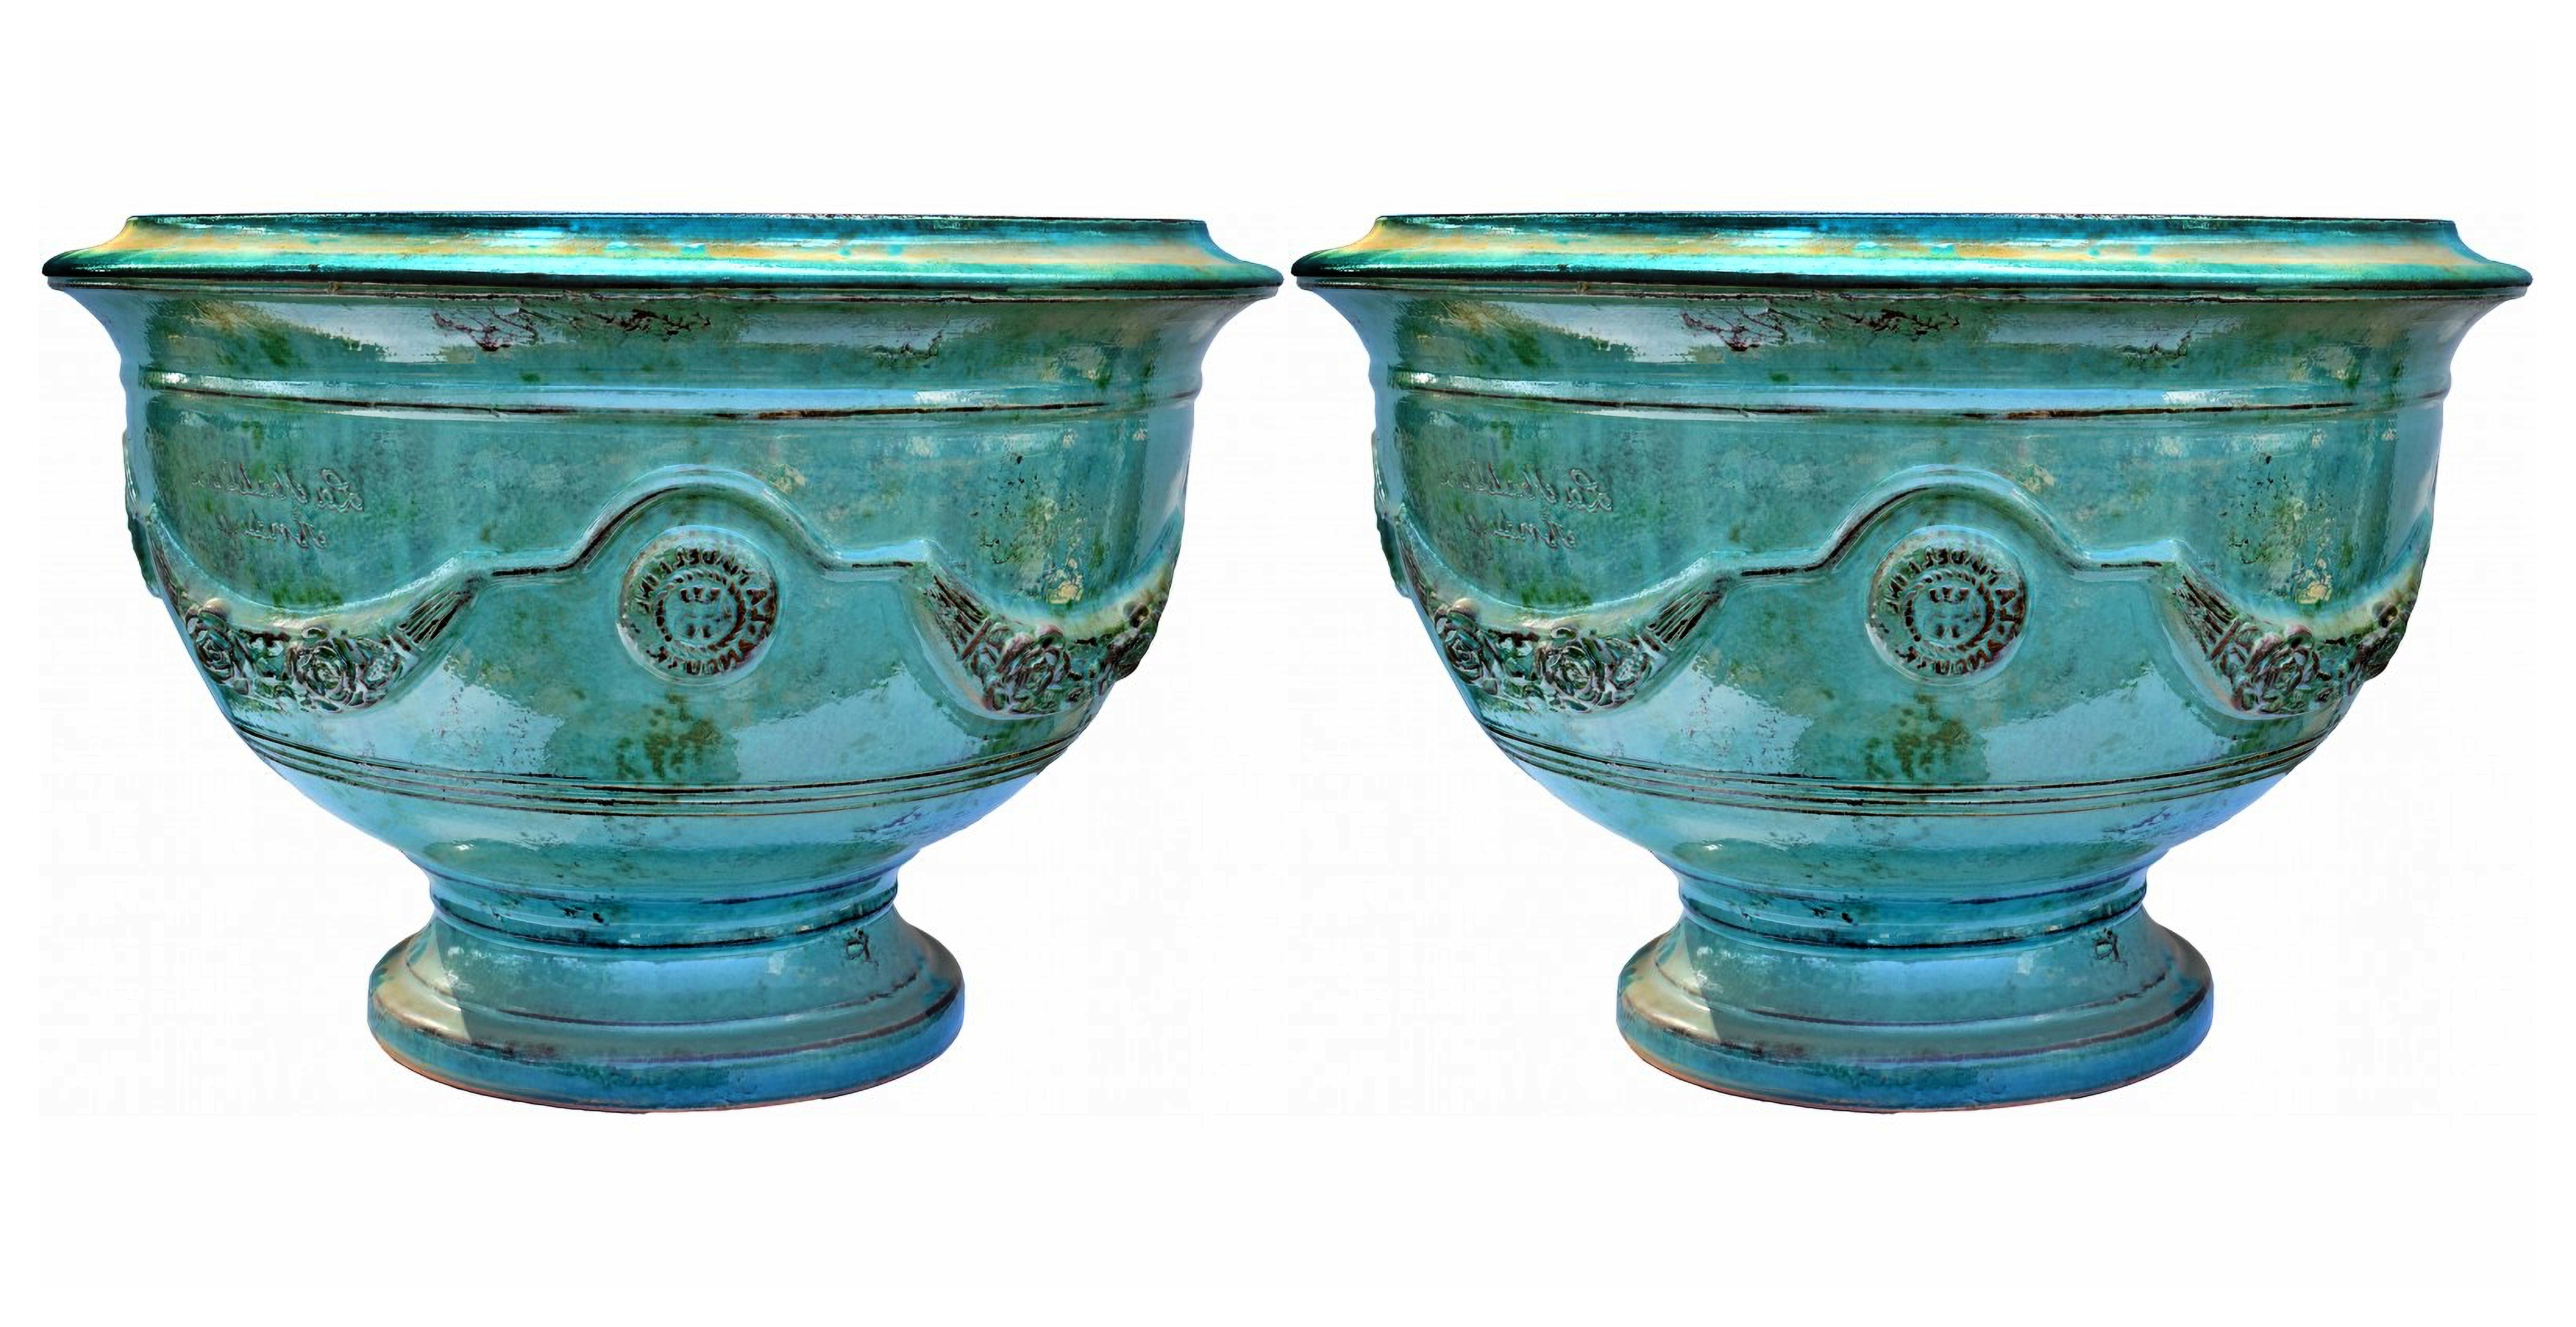 Paire de vases en majolique des Cévennes (France) début 20ème siècle

Les pots d'Anduze sont une spécialité artisanale des Cévennes, région culturelle et chaîne de montagnes du centre-sud de la France, située au sud-est du Massif central. Il